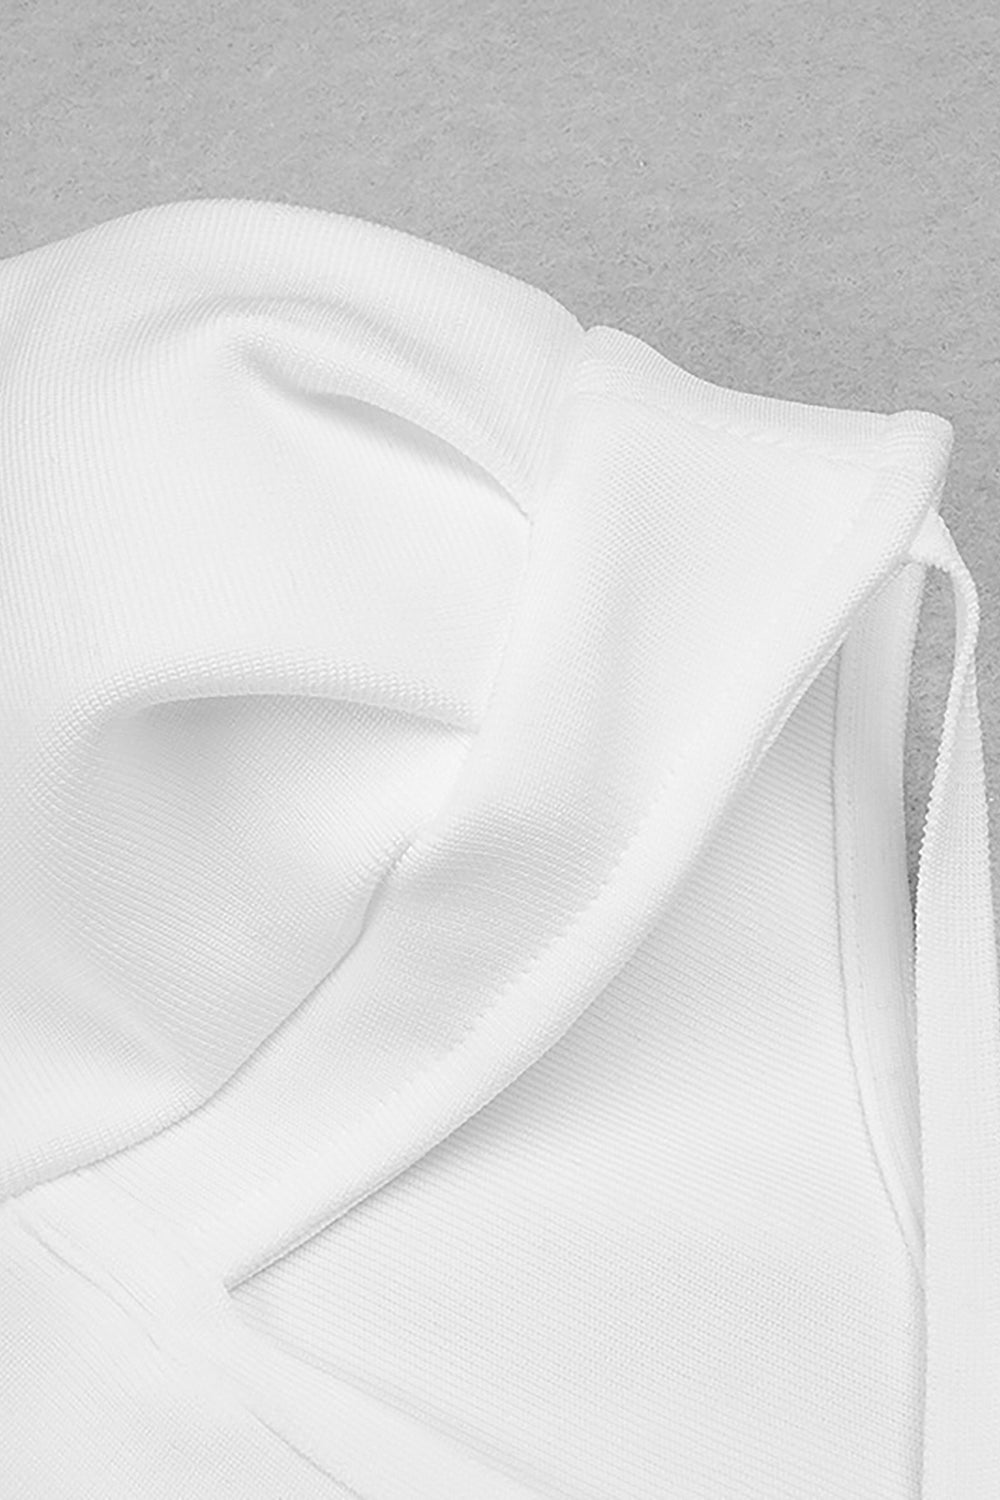 Vestido branco de manga comprida com um ombro vazado e bandagem alta dividida